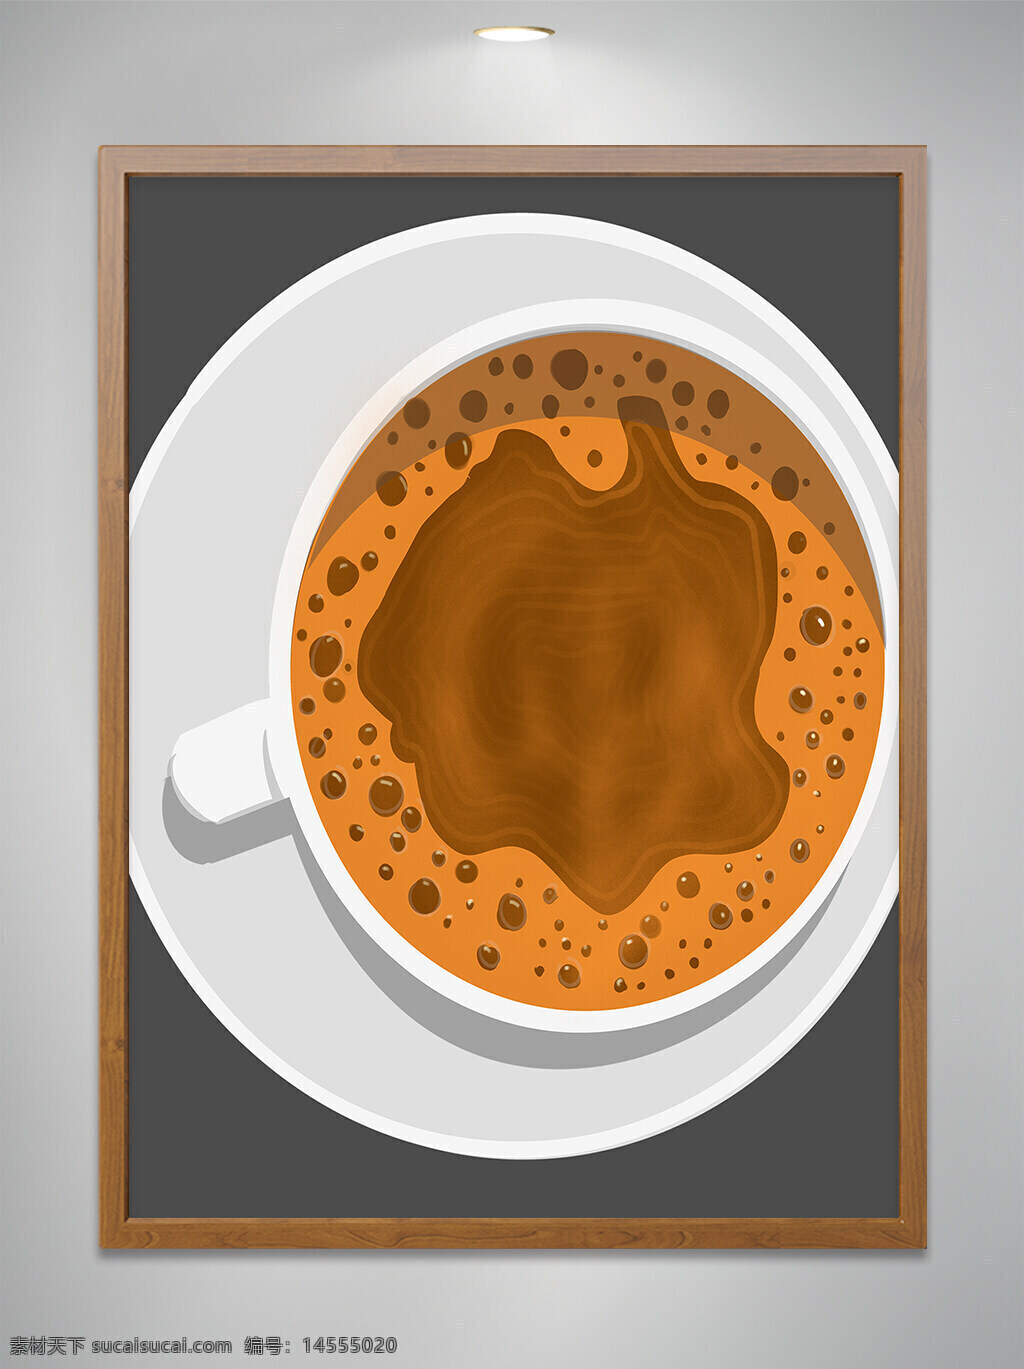 咖啡海报 咖啡厅 咖啡馆 咖啡豆 速溶咖啡 现磨咖啡 二合一咖啡 摩卡咖啡 蓝山咖啡 拿铁咖啡 卡布奇诺咖啡 猫屎咖啡 雀巢咖啡 咖啡菜单 咖啡画册咖啡 咖啡素材